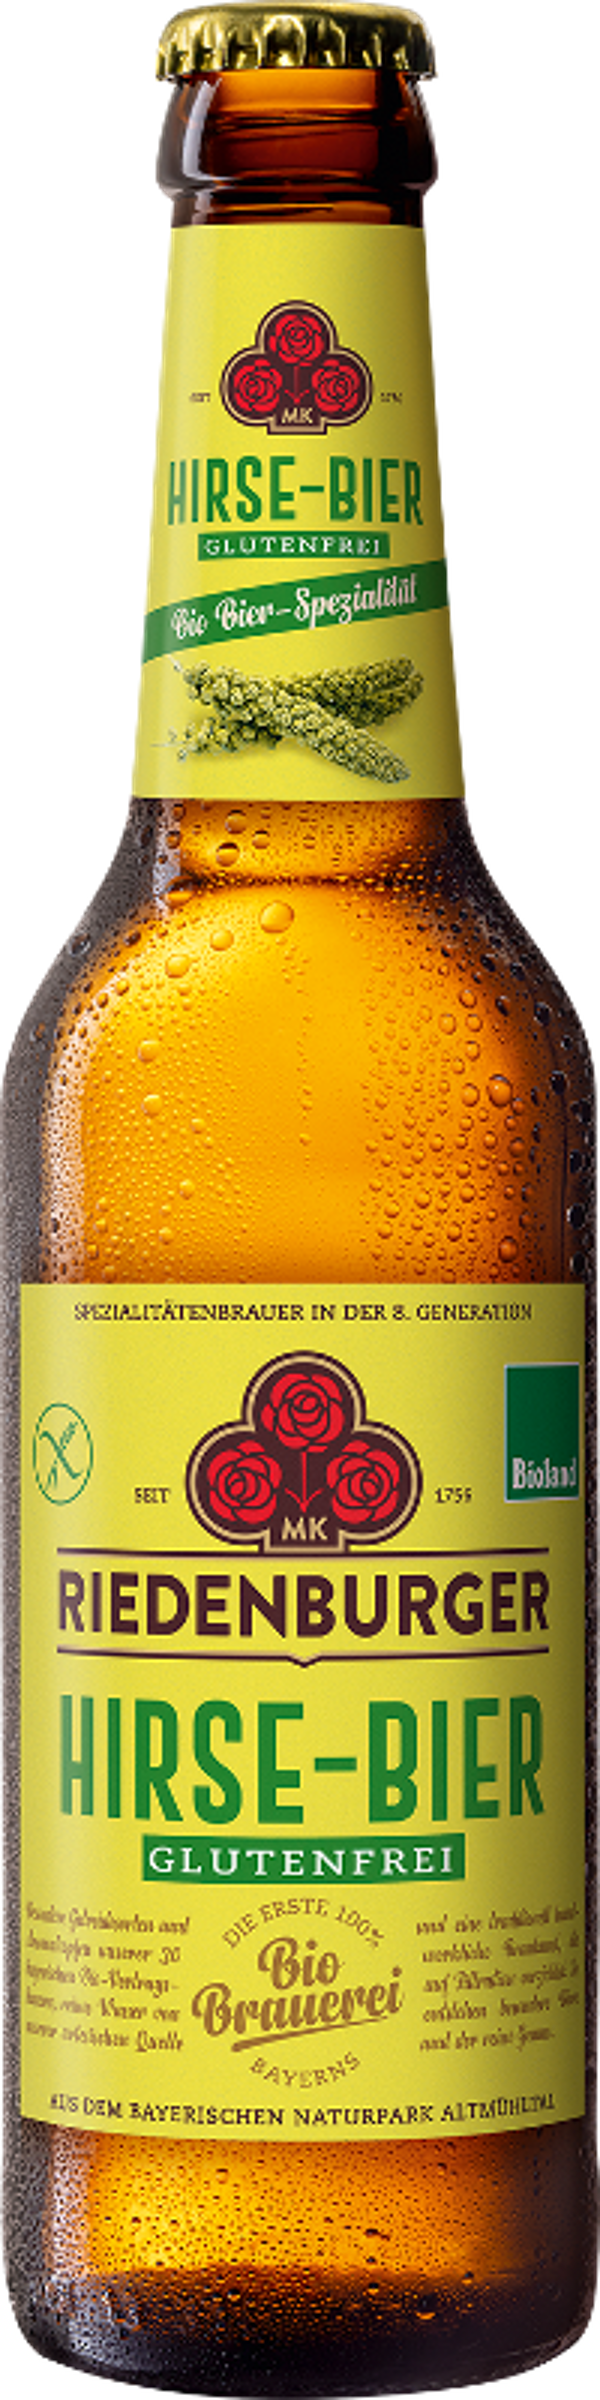 Produktfoto zu Riedenburger Hirse Bier gf